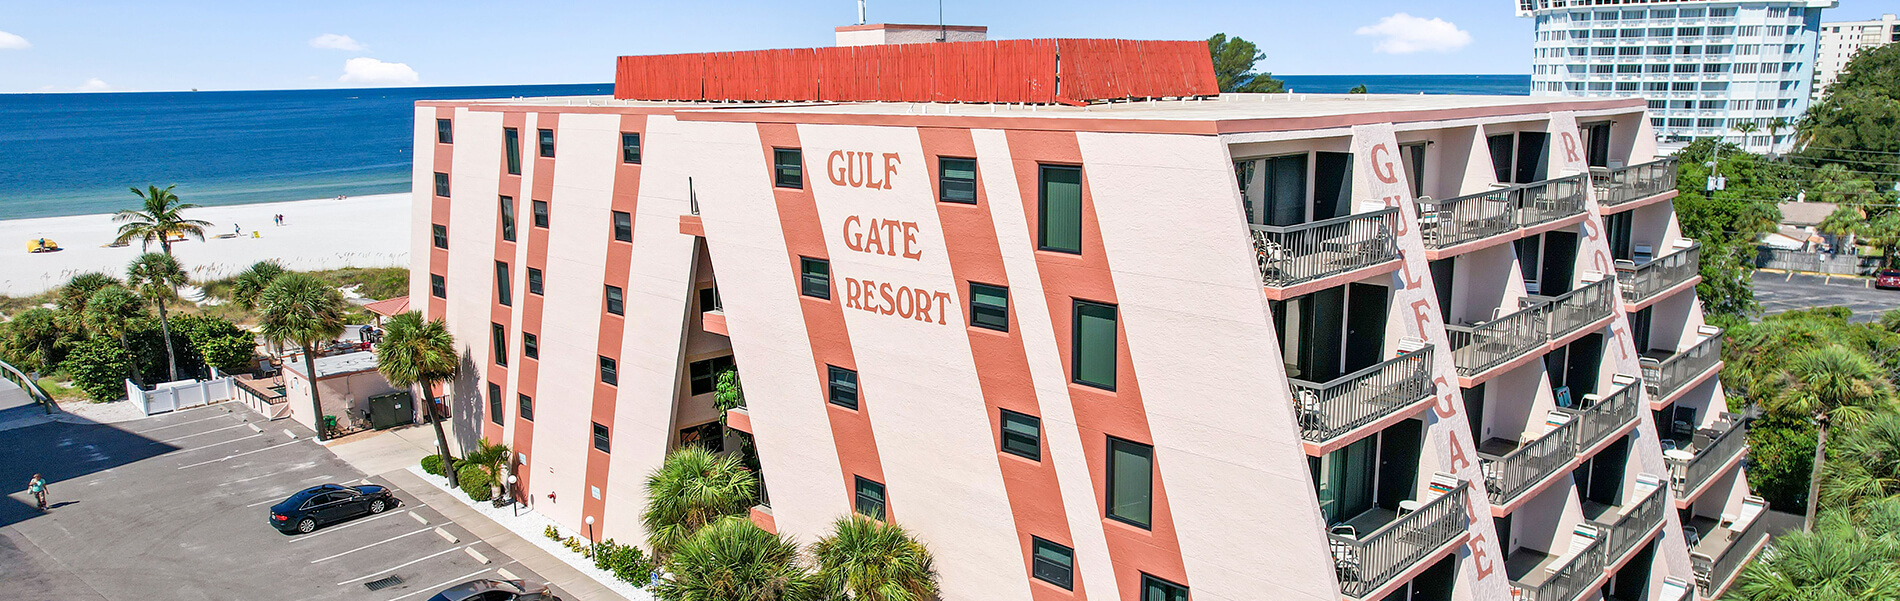 Gulf Gate Resort